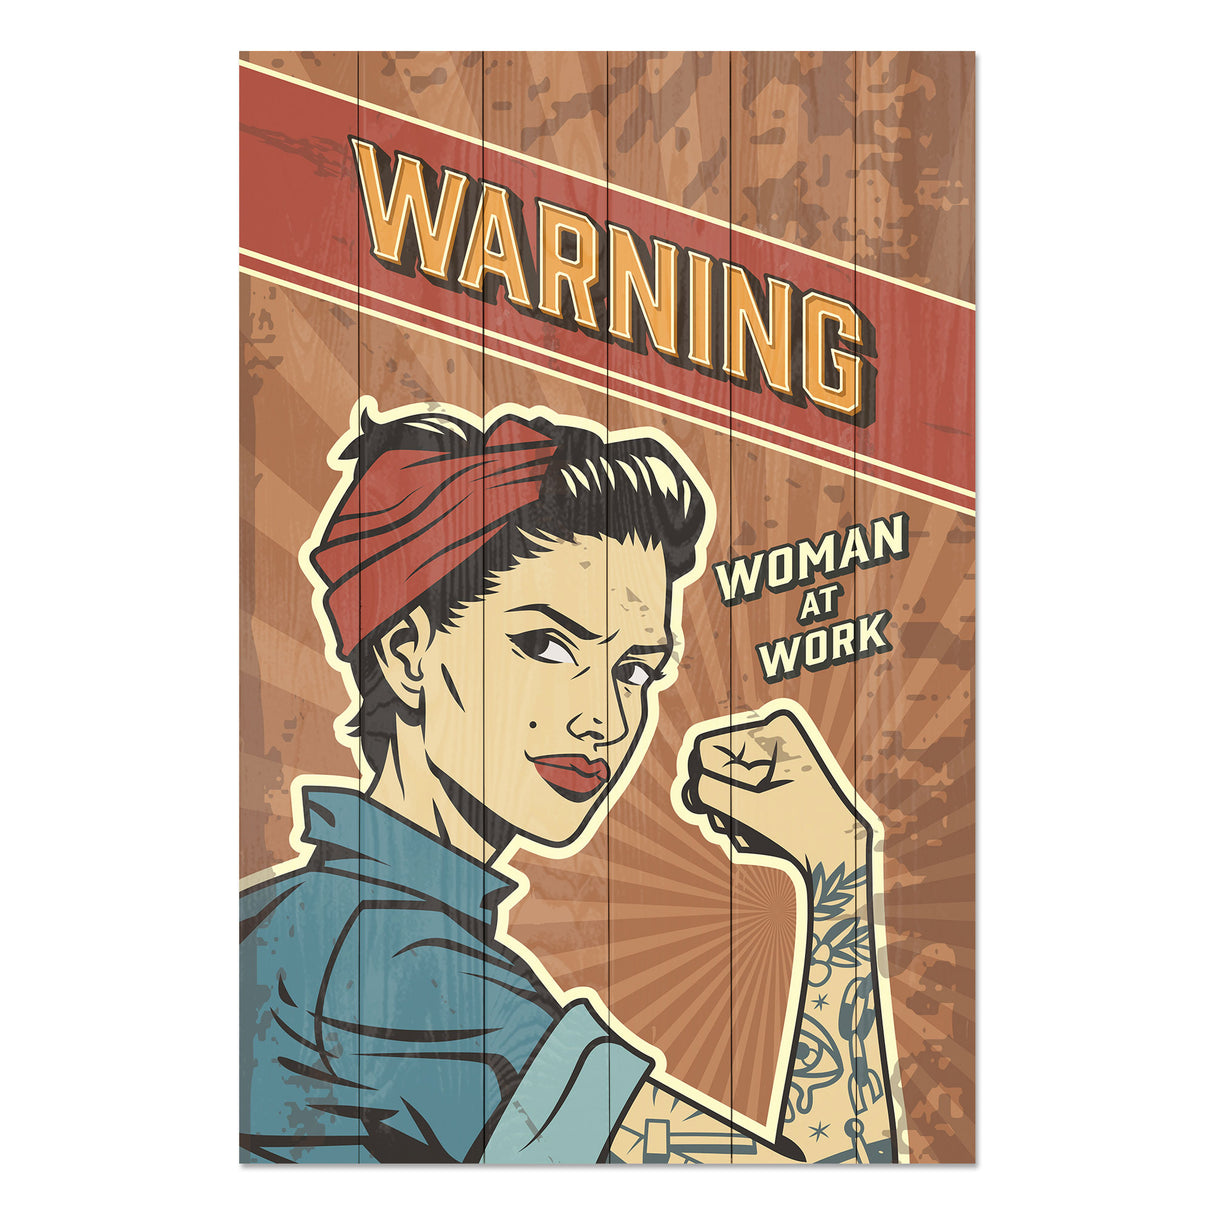 Obraz na drewnie Kobieta pracująca - Warning